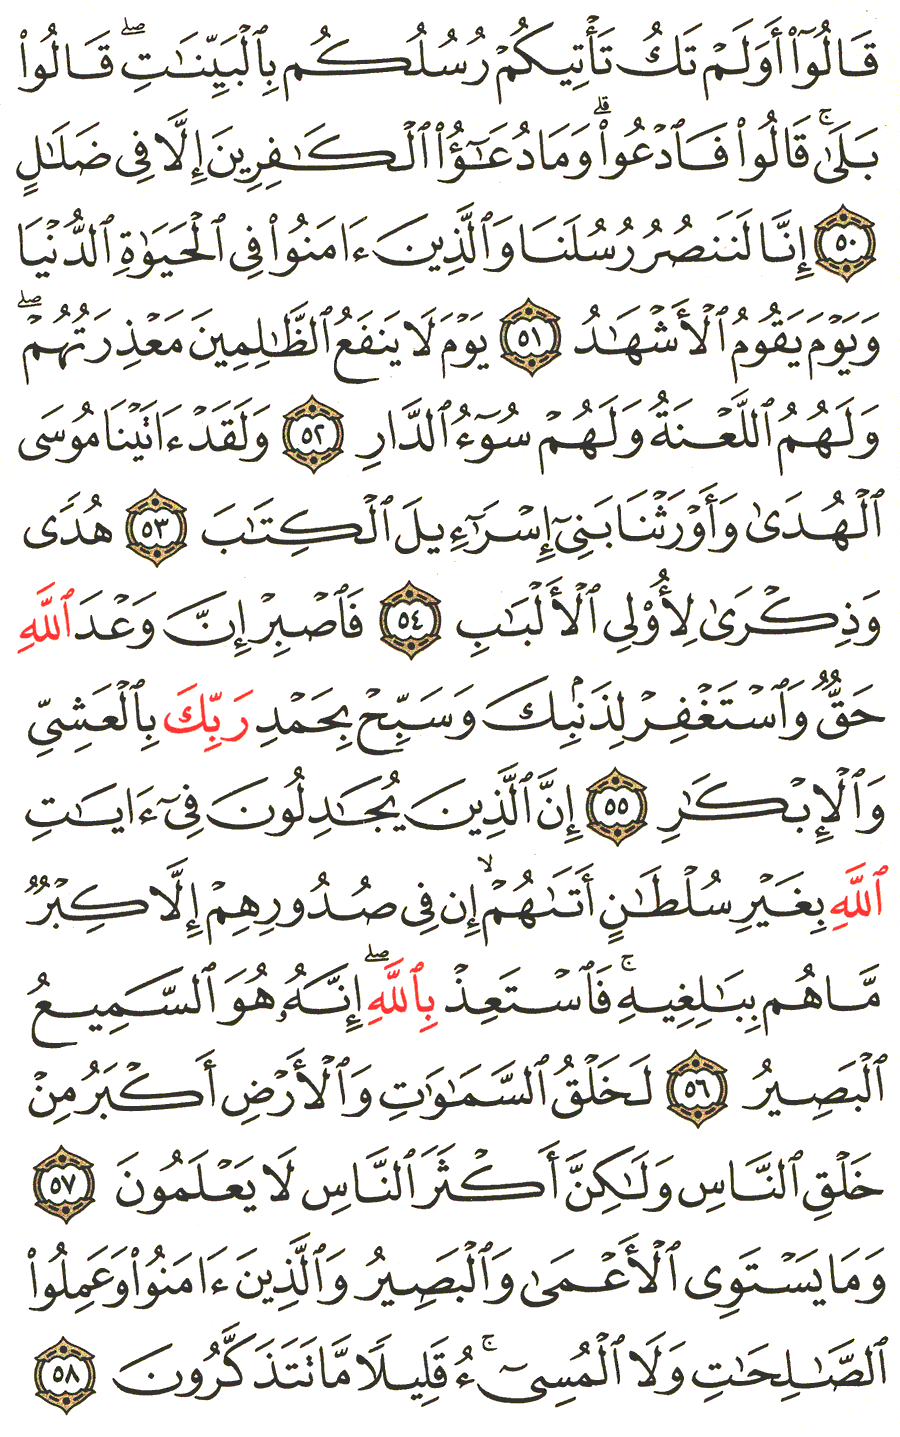 الصفحة 473 من القرآن الكريم